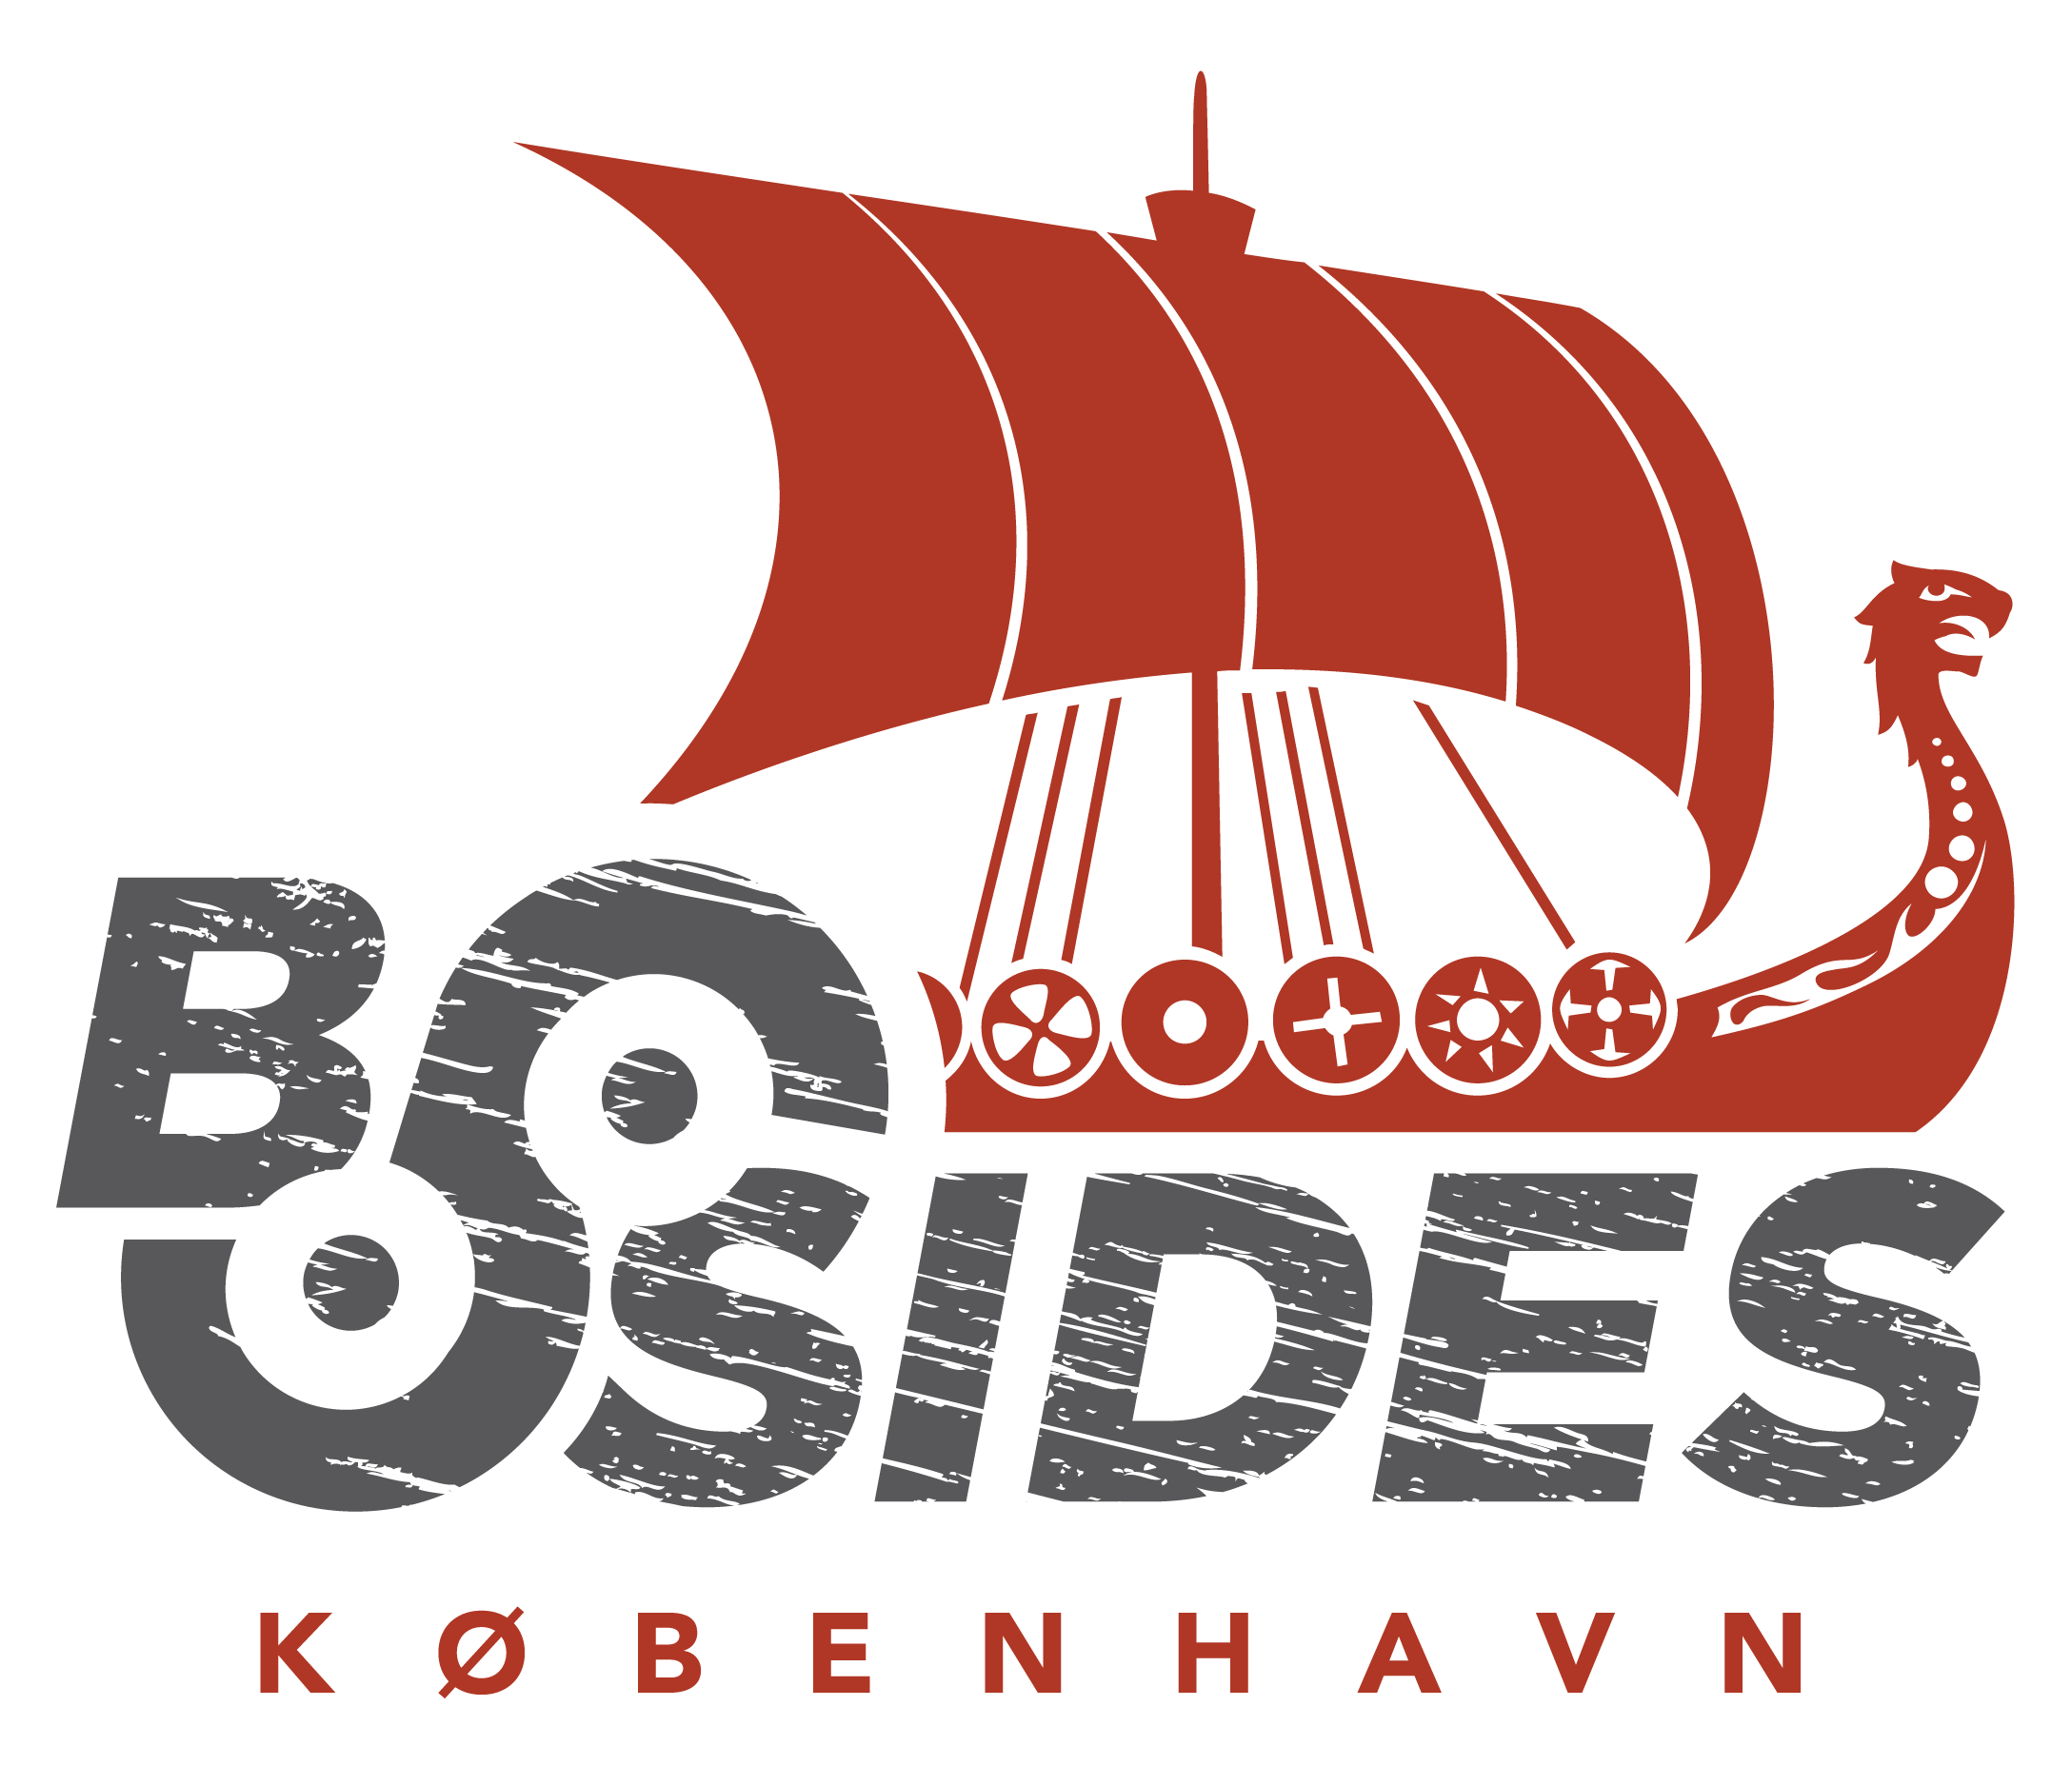 BSides København 2021